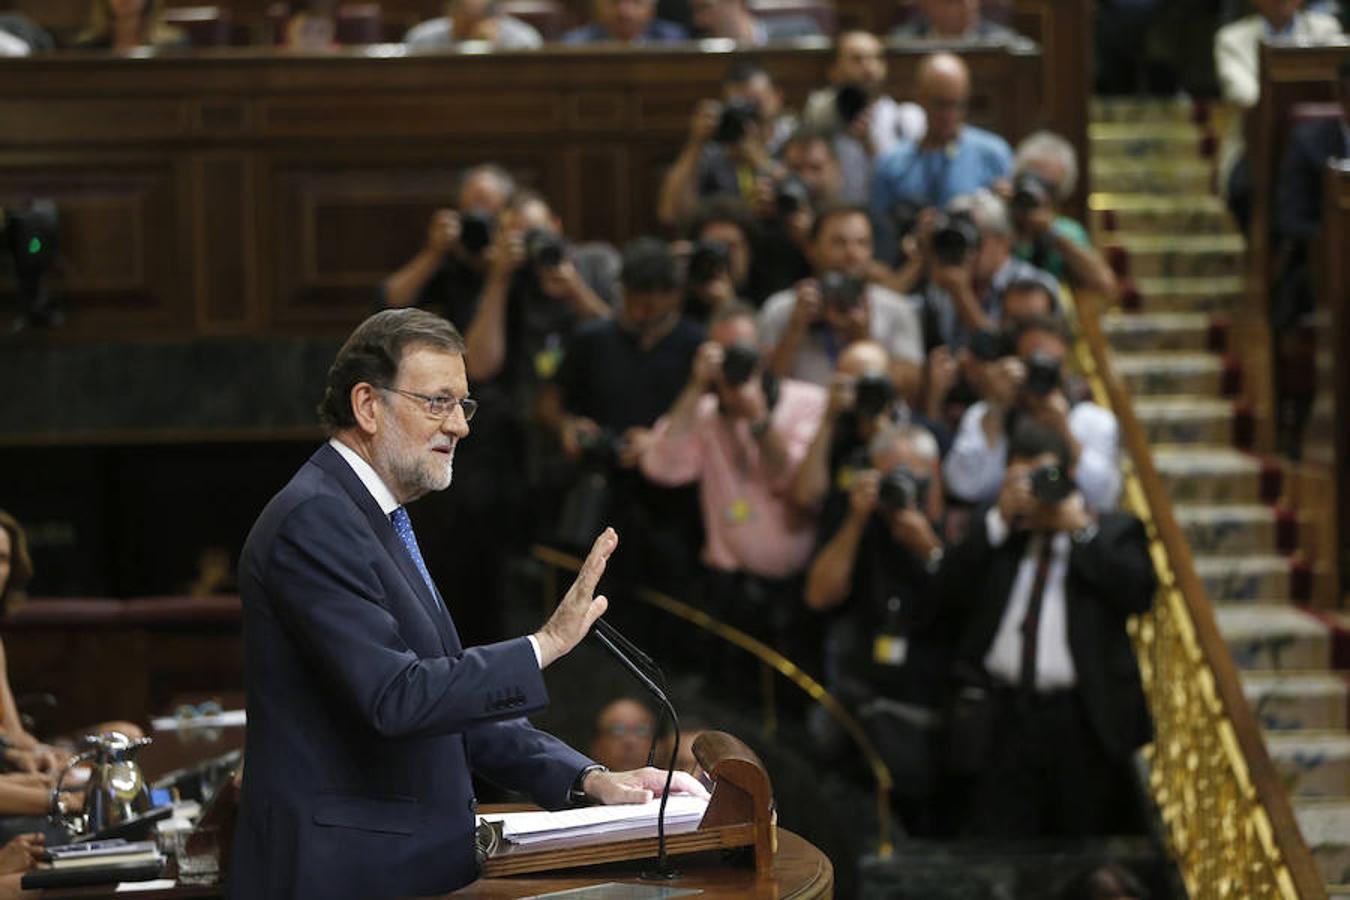 El presidente del Gobierno en funciones, Mariano Rajoy, al inicio de su intervención esta tarde en el Congreso de los Diputados en la primera jornada del debate de investidura